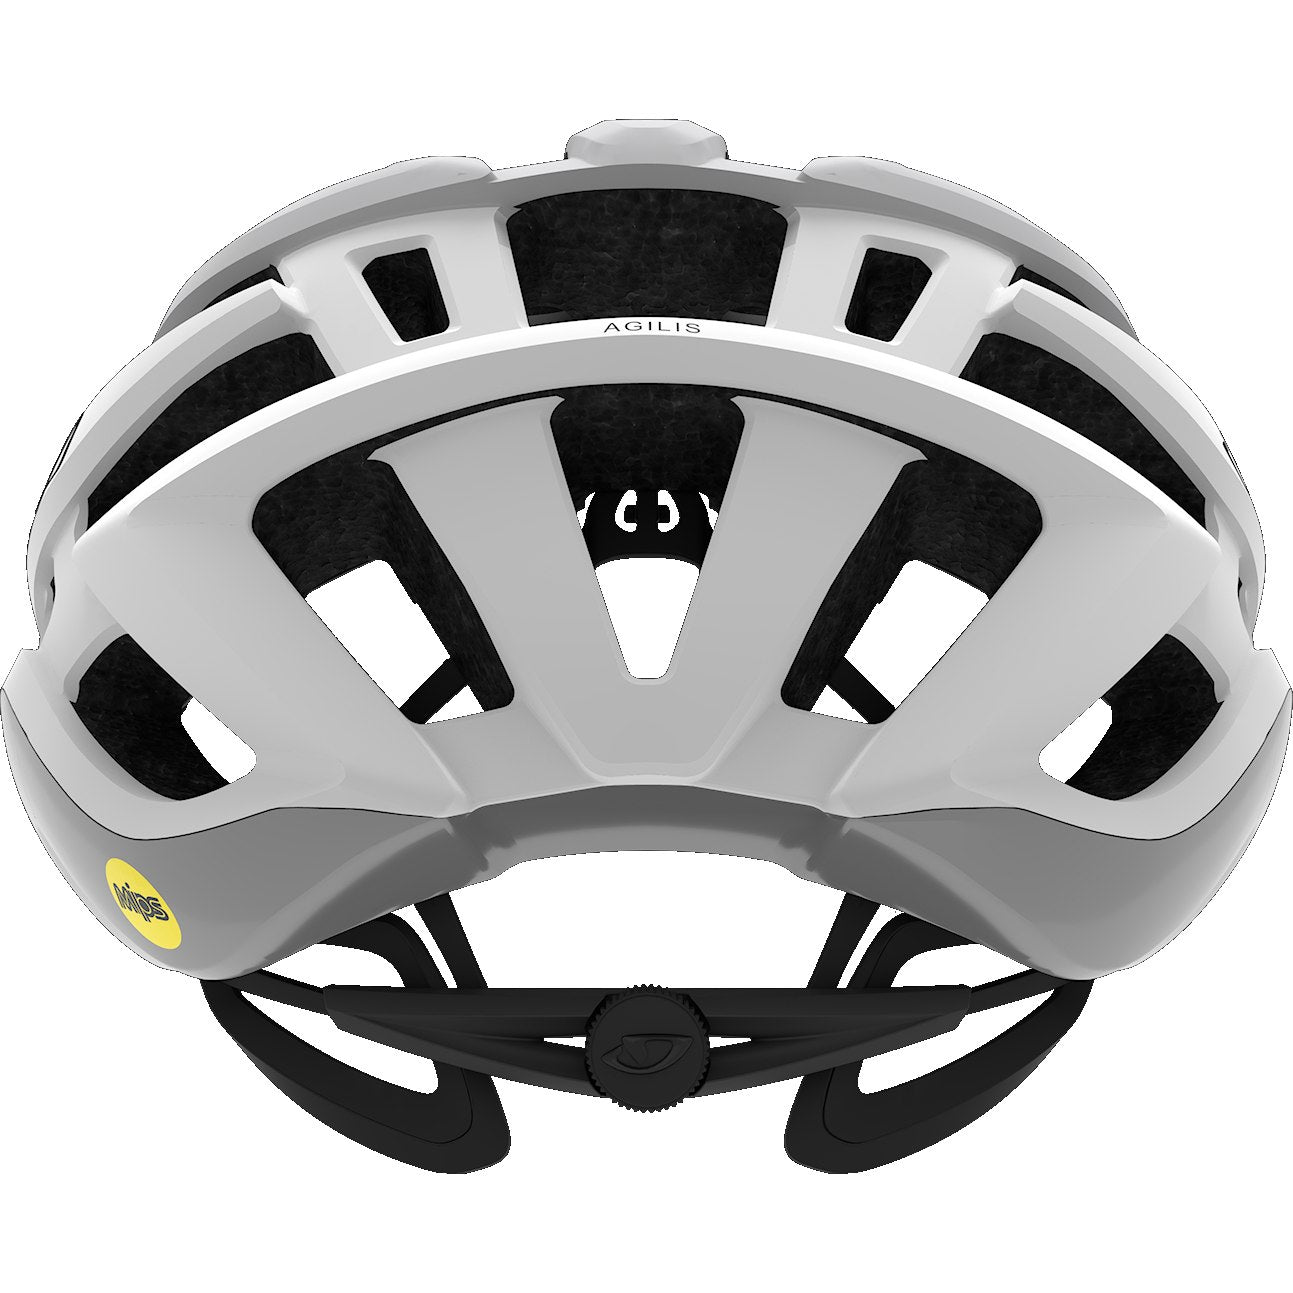 Rear View of Giro Agilis MIPS Cycling Helmet (S,M,L) - Matte White